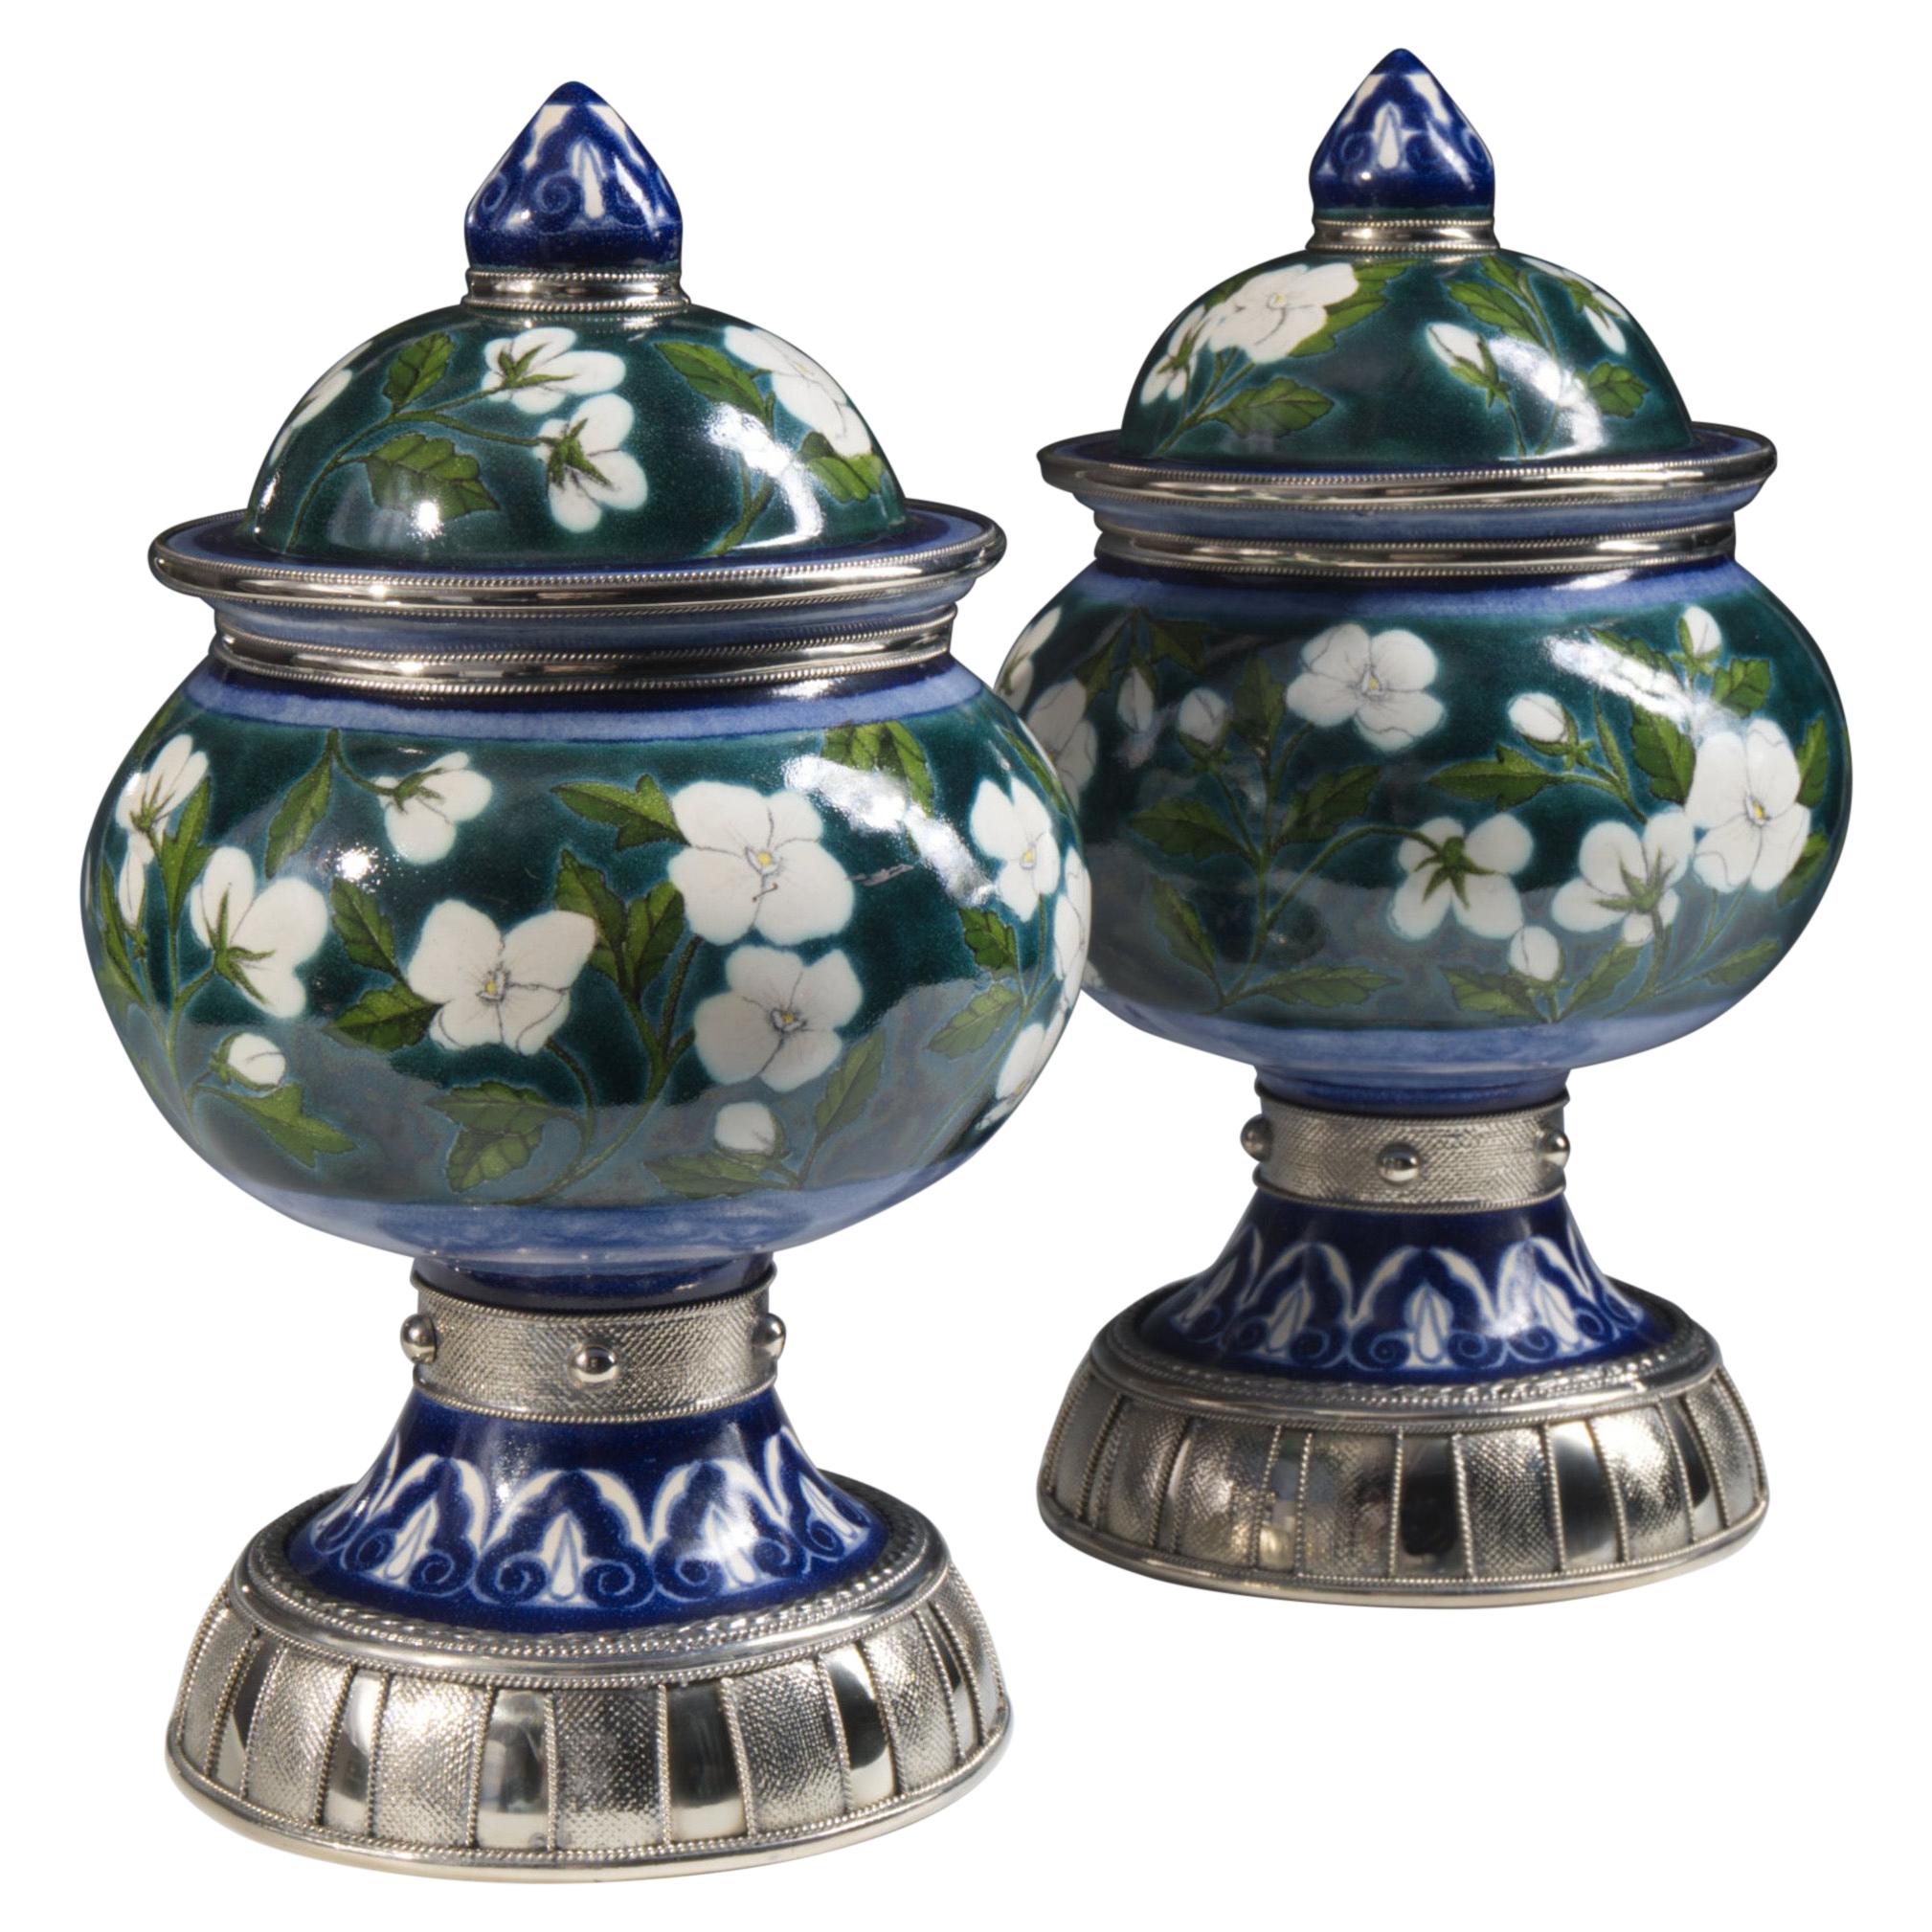 Blue and White Pair Jars Ceramic and White Metal ‘Alpaca’, Handmade with Cherubs